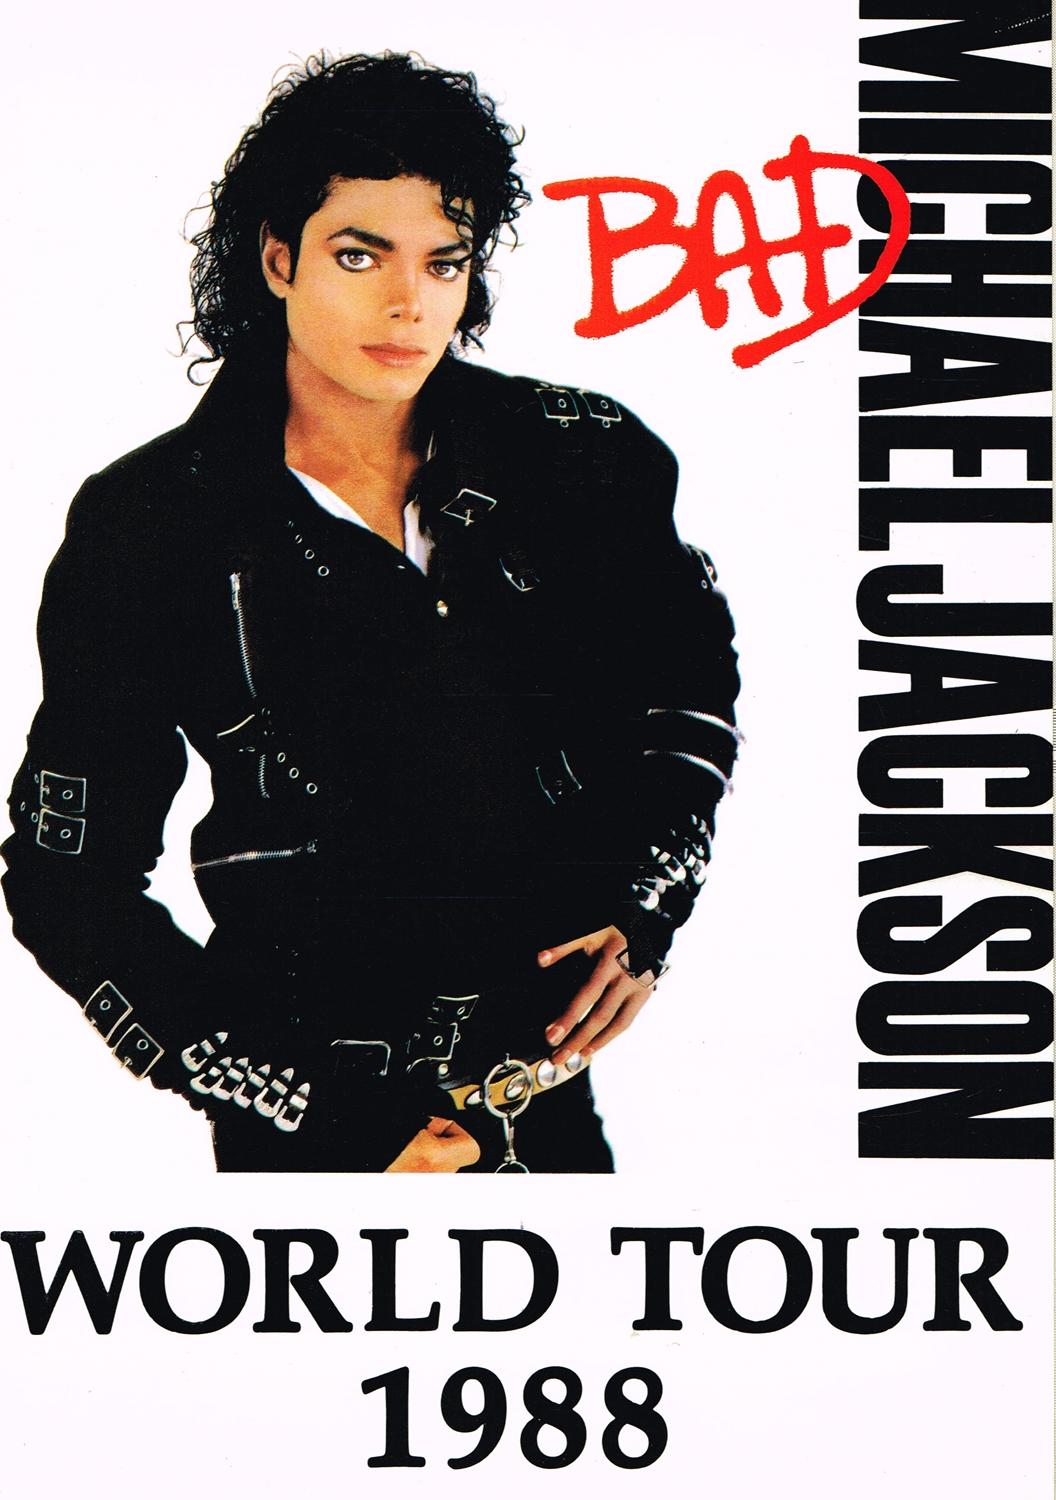 1988 world tour